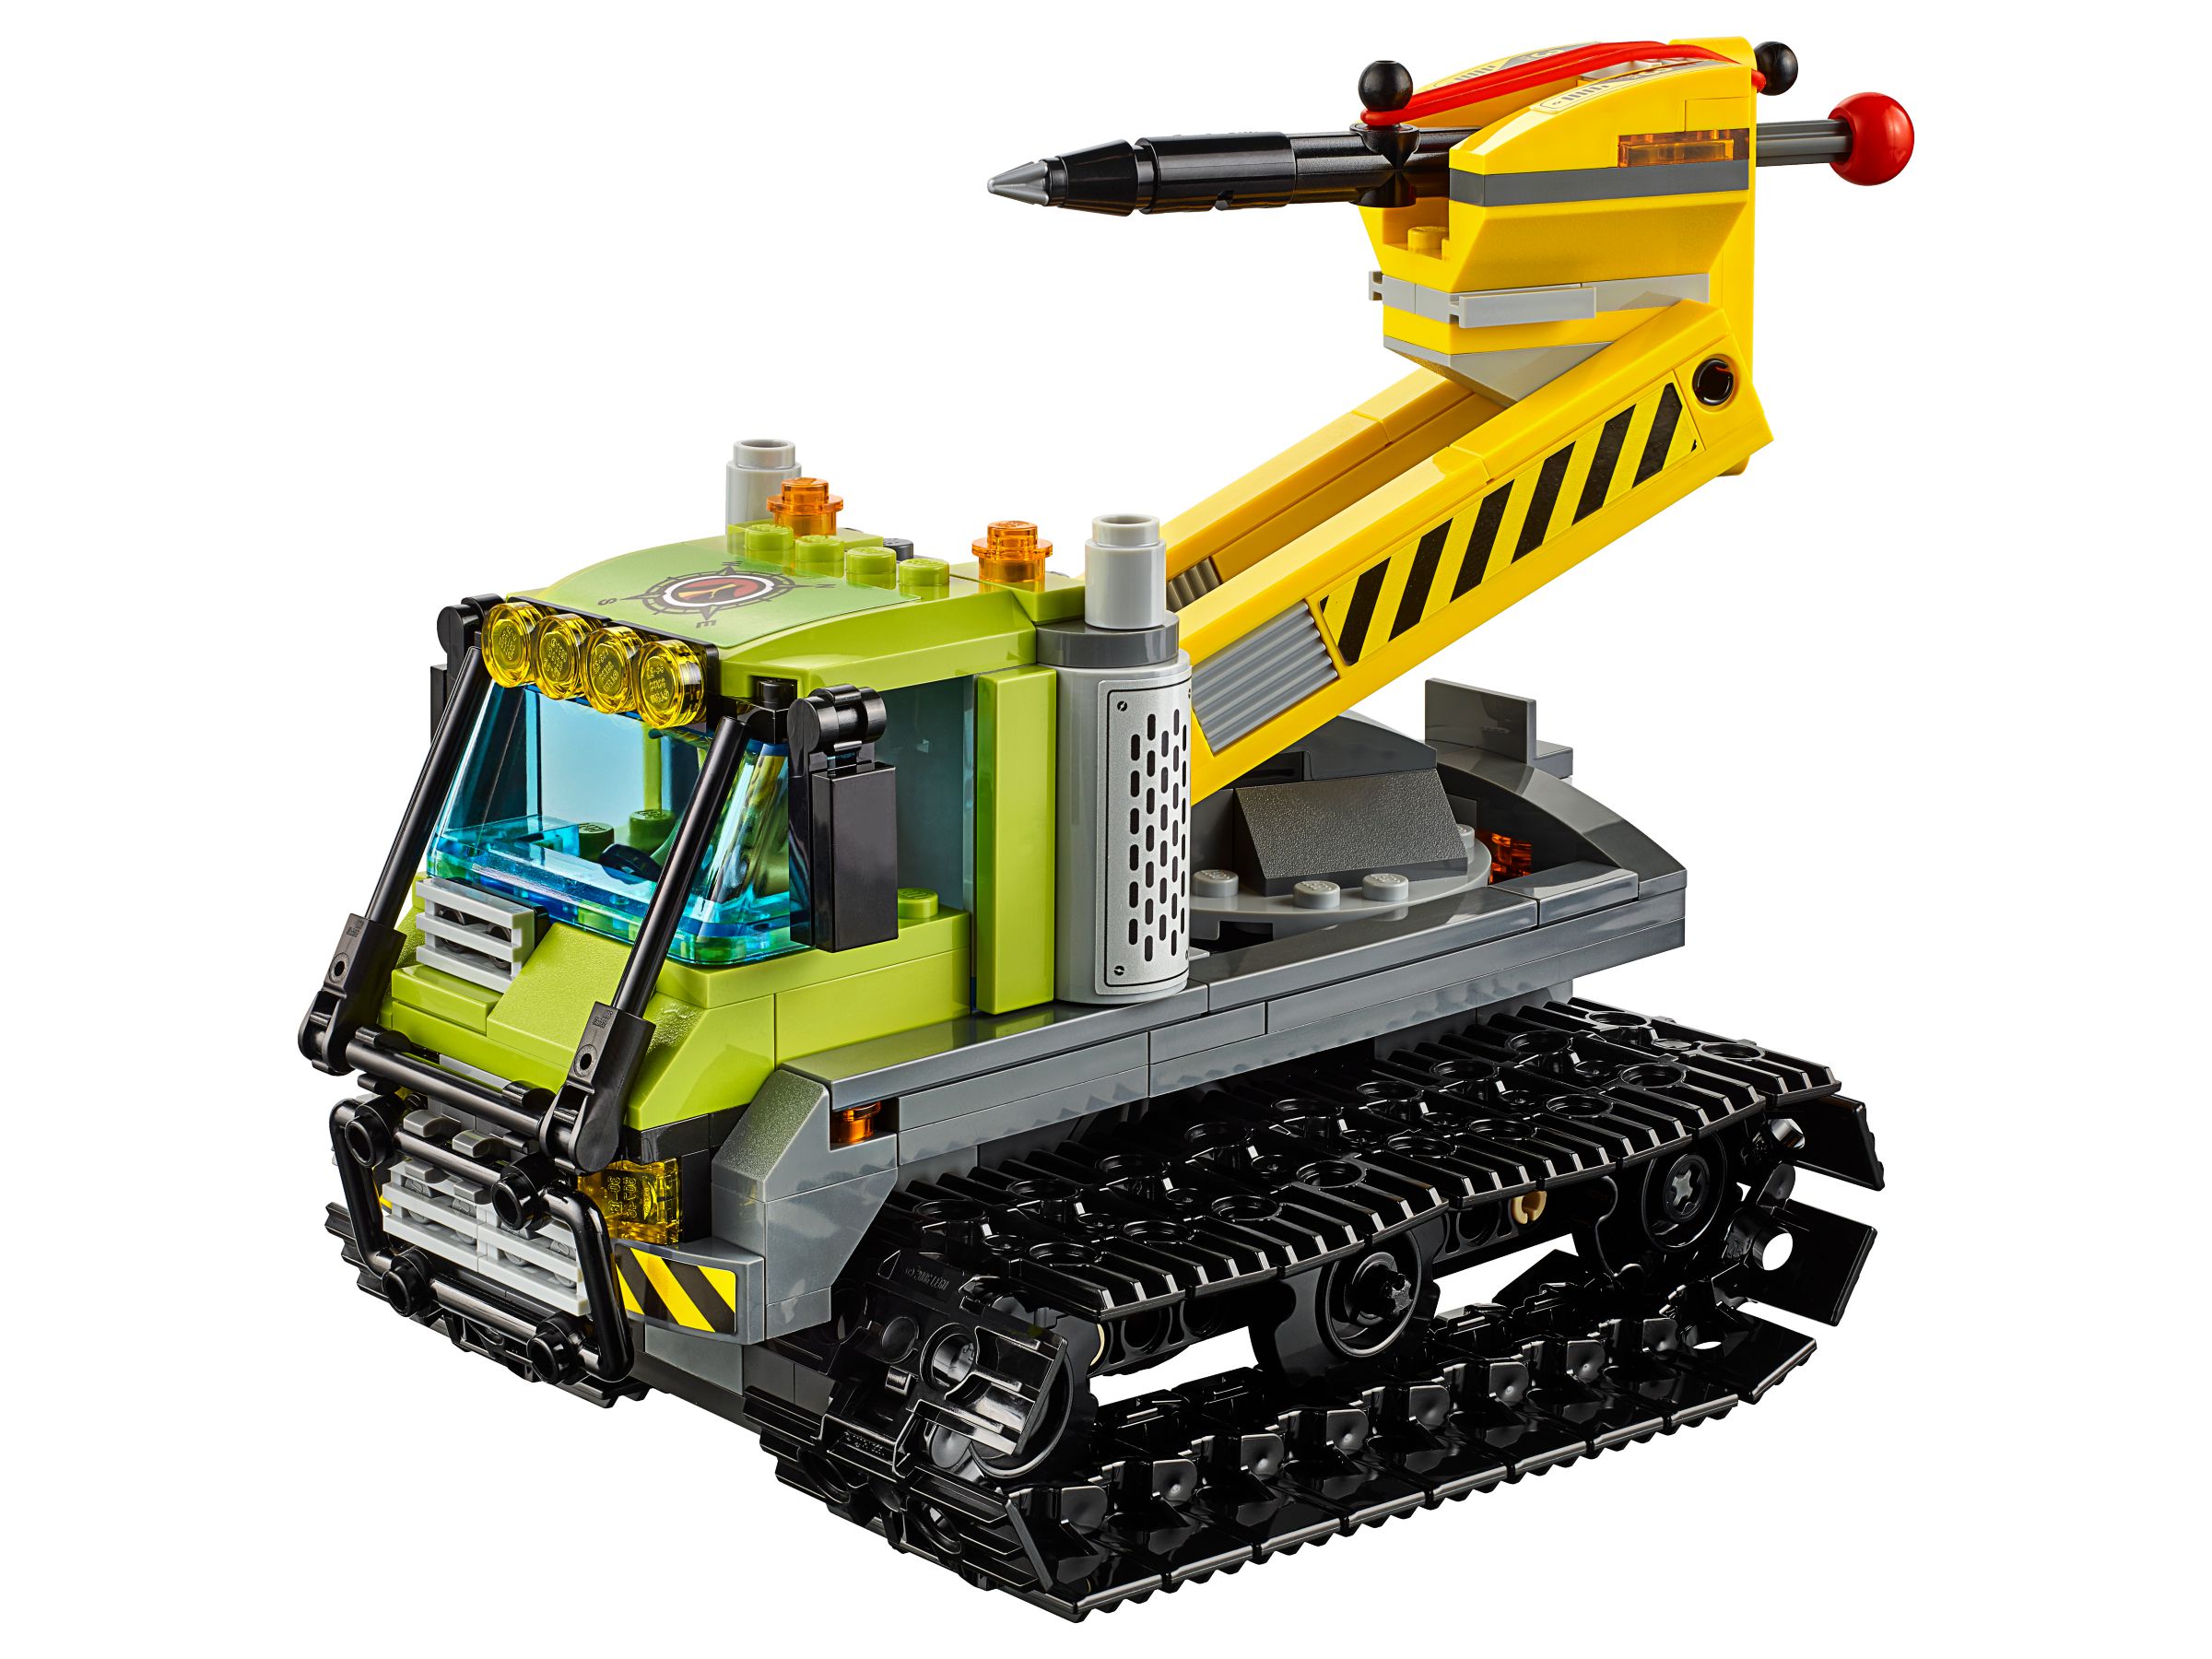 LEGO City 60122 Vulkan-Raupe LEGO_60122_alt3.jpg